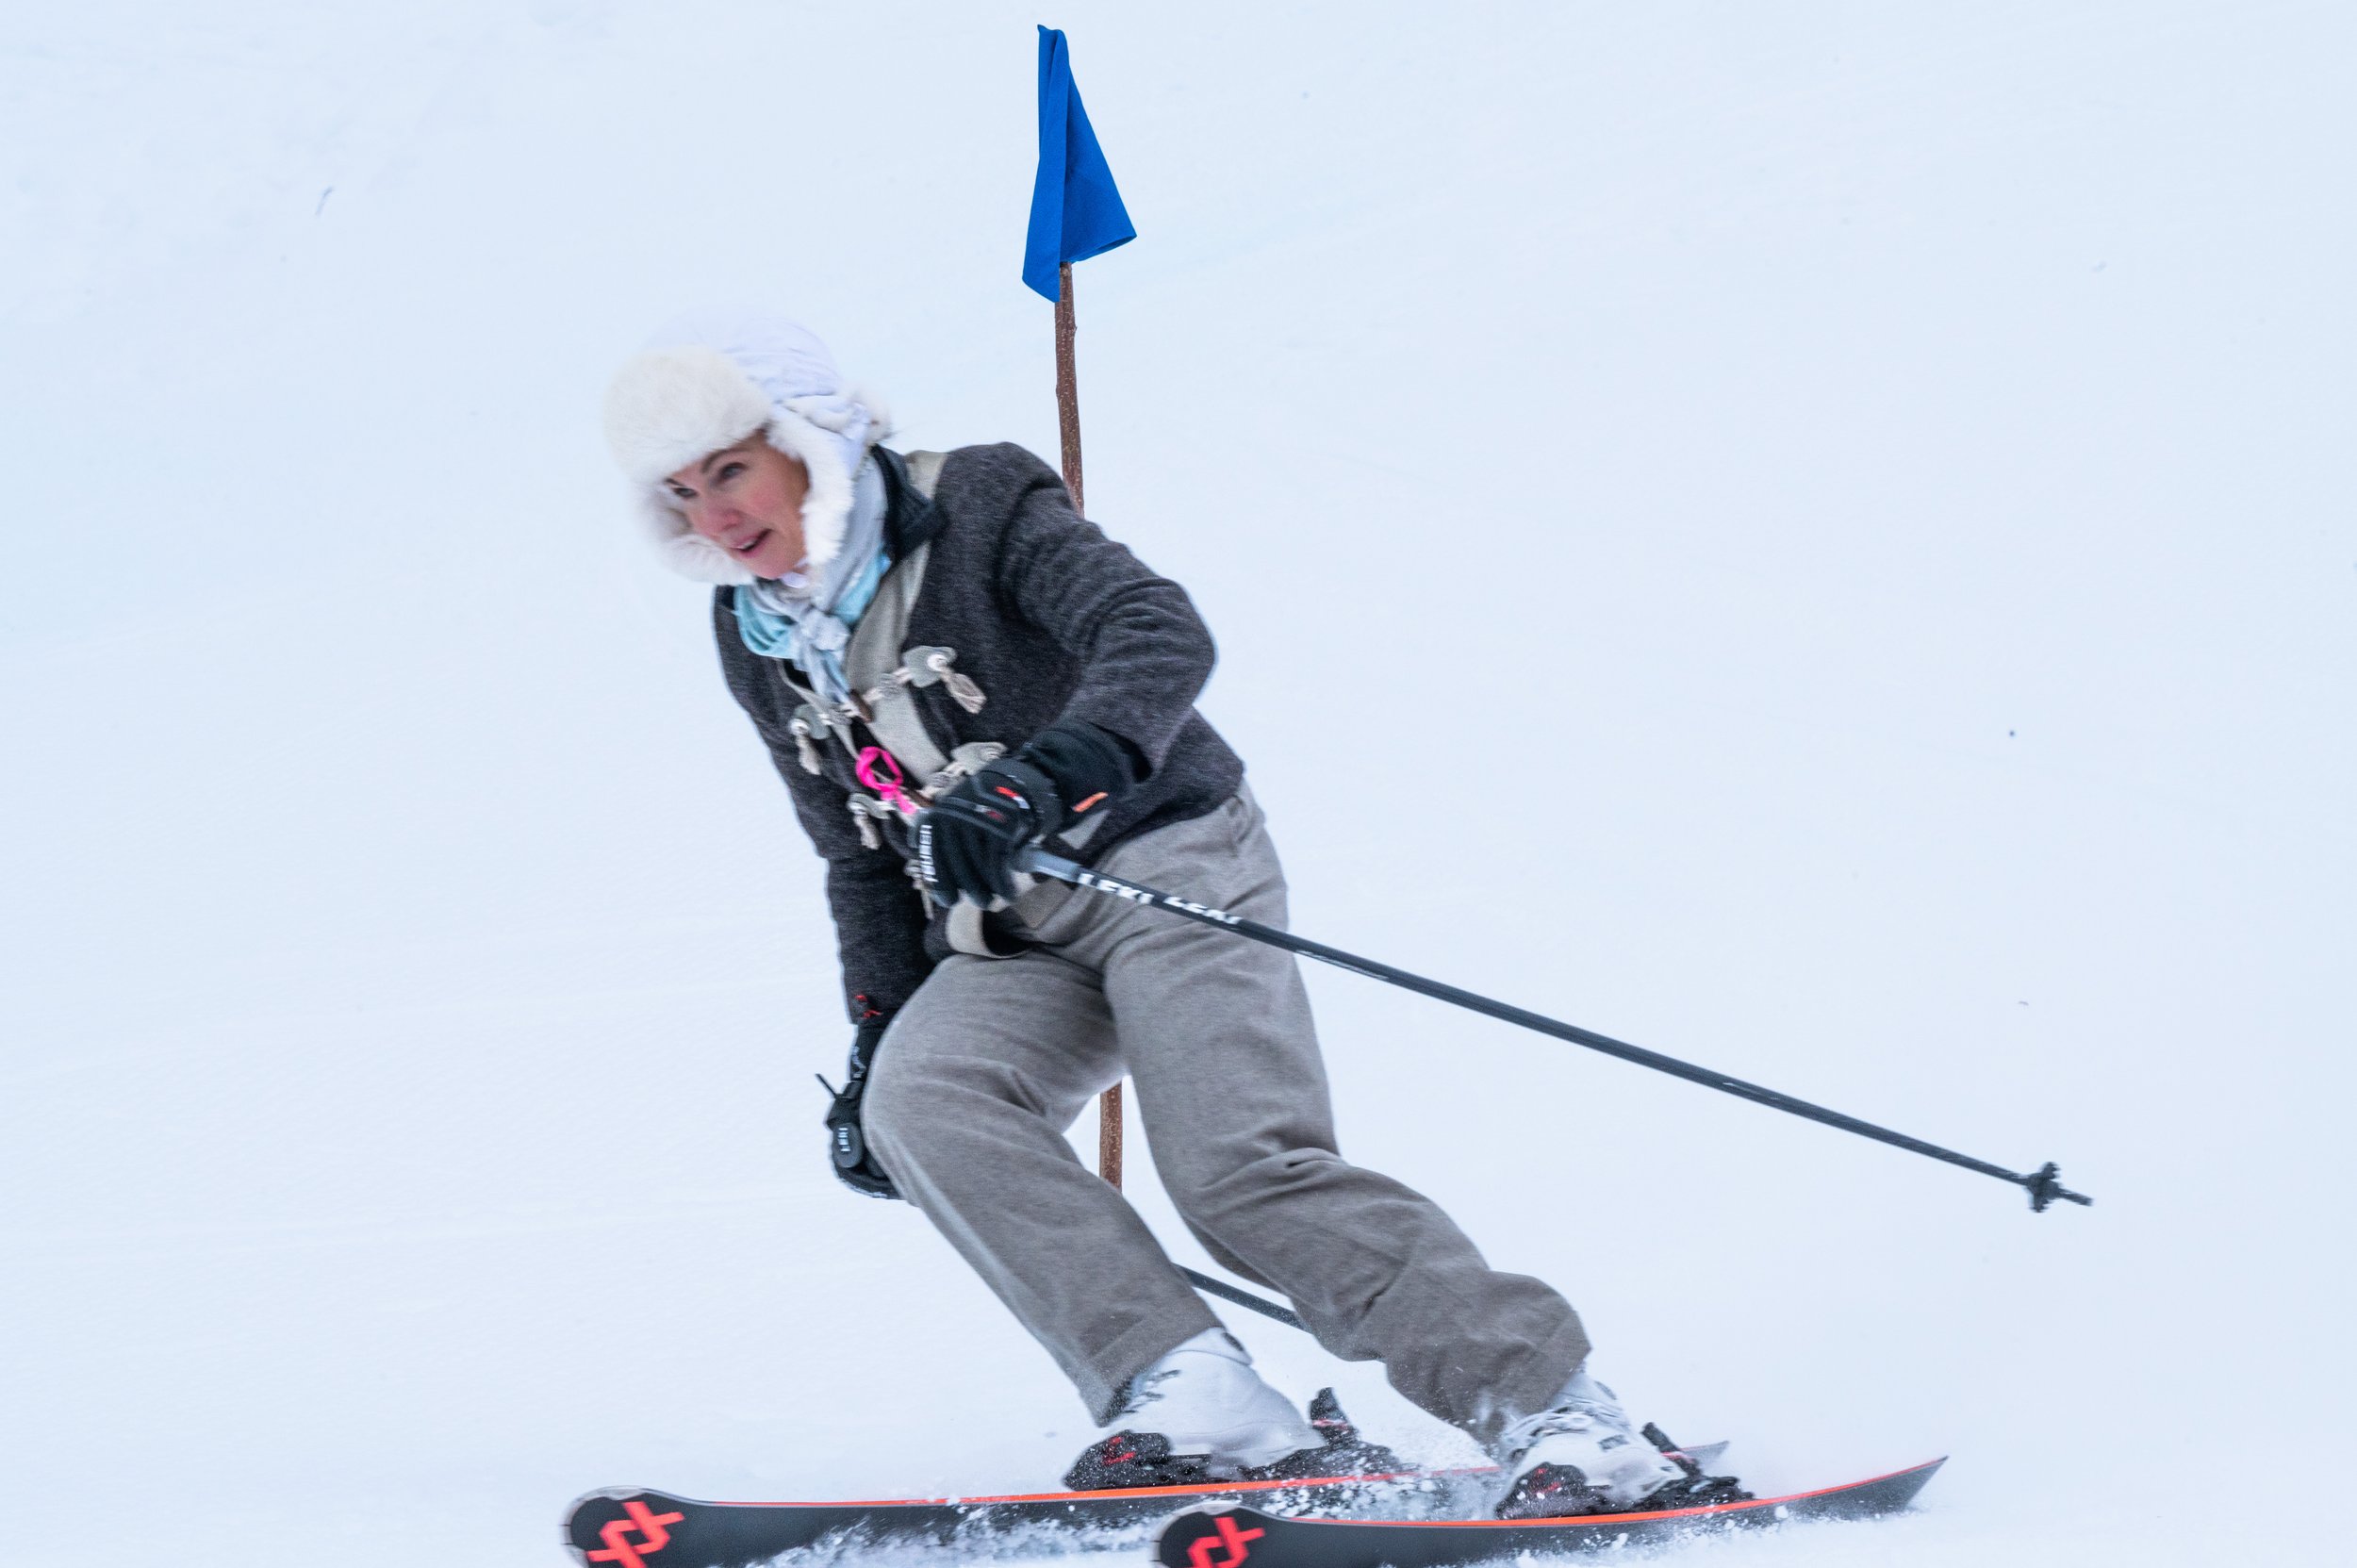 Adrienne skiing 2.jpg